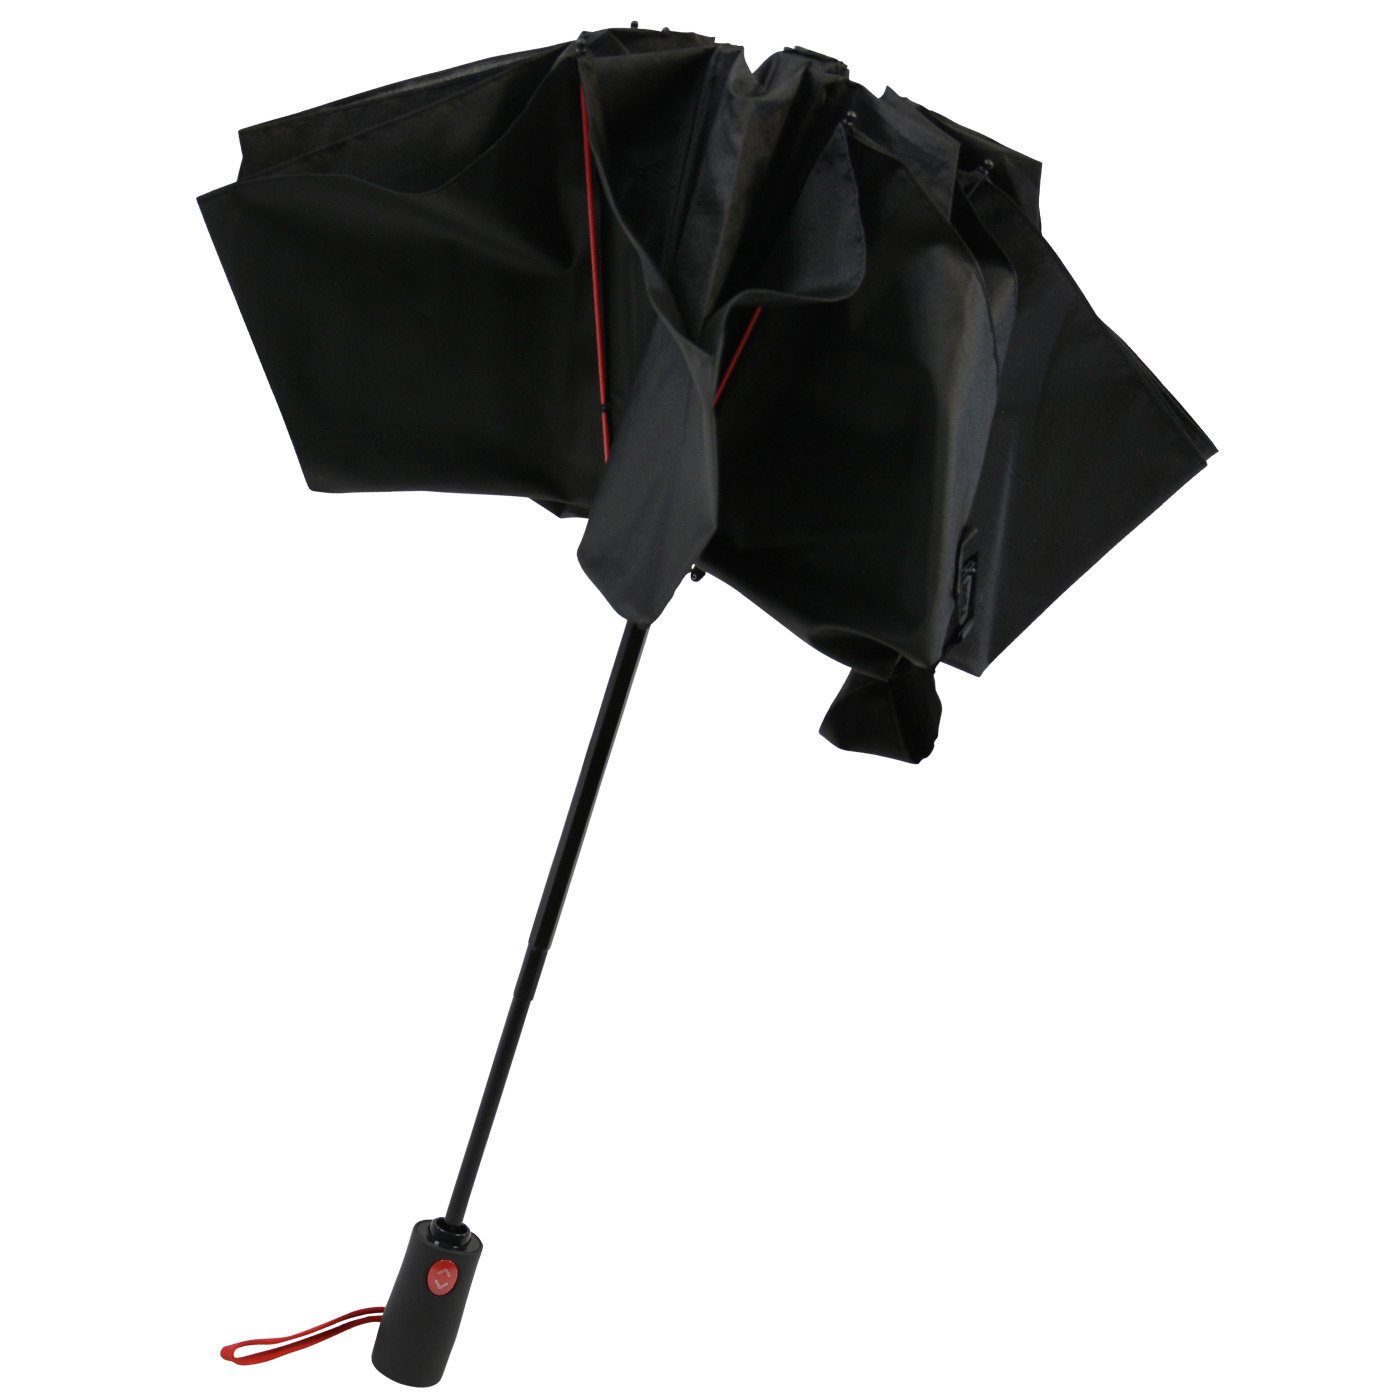 schwarz-rot umgekehrt Taschenregenschirm stabilen öffnender iX-brella Reverse Fiberglas-Automatiksch, bunten Speichen mit